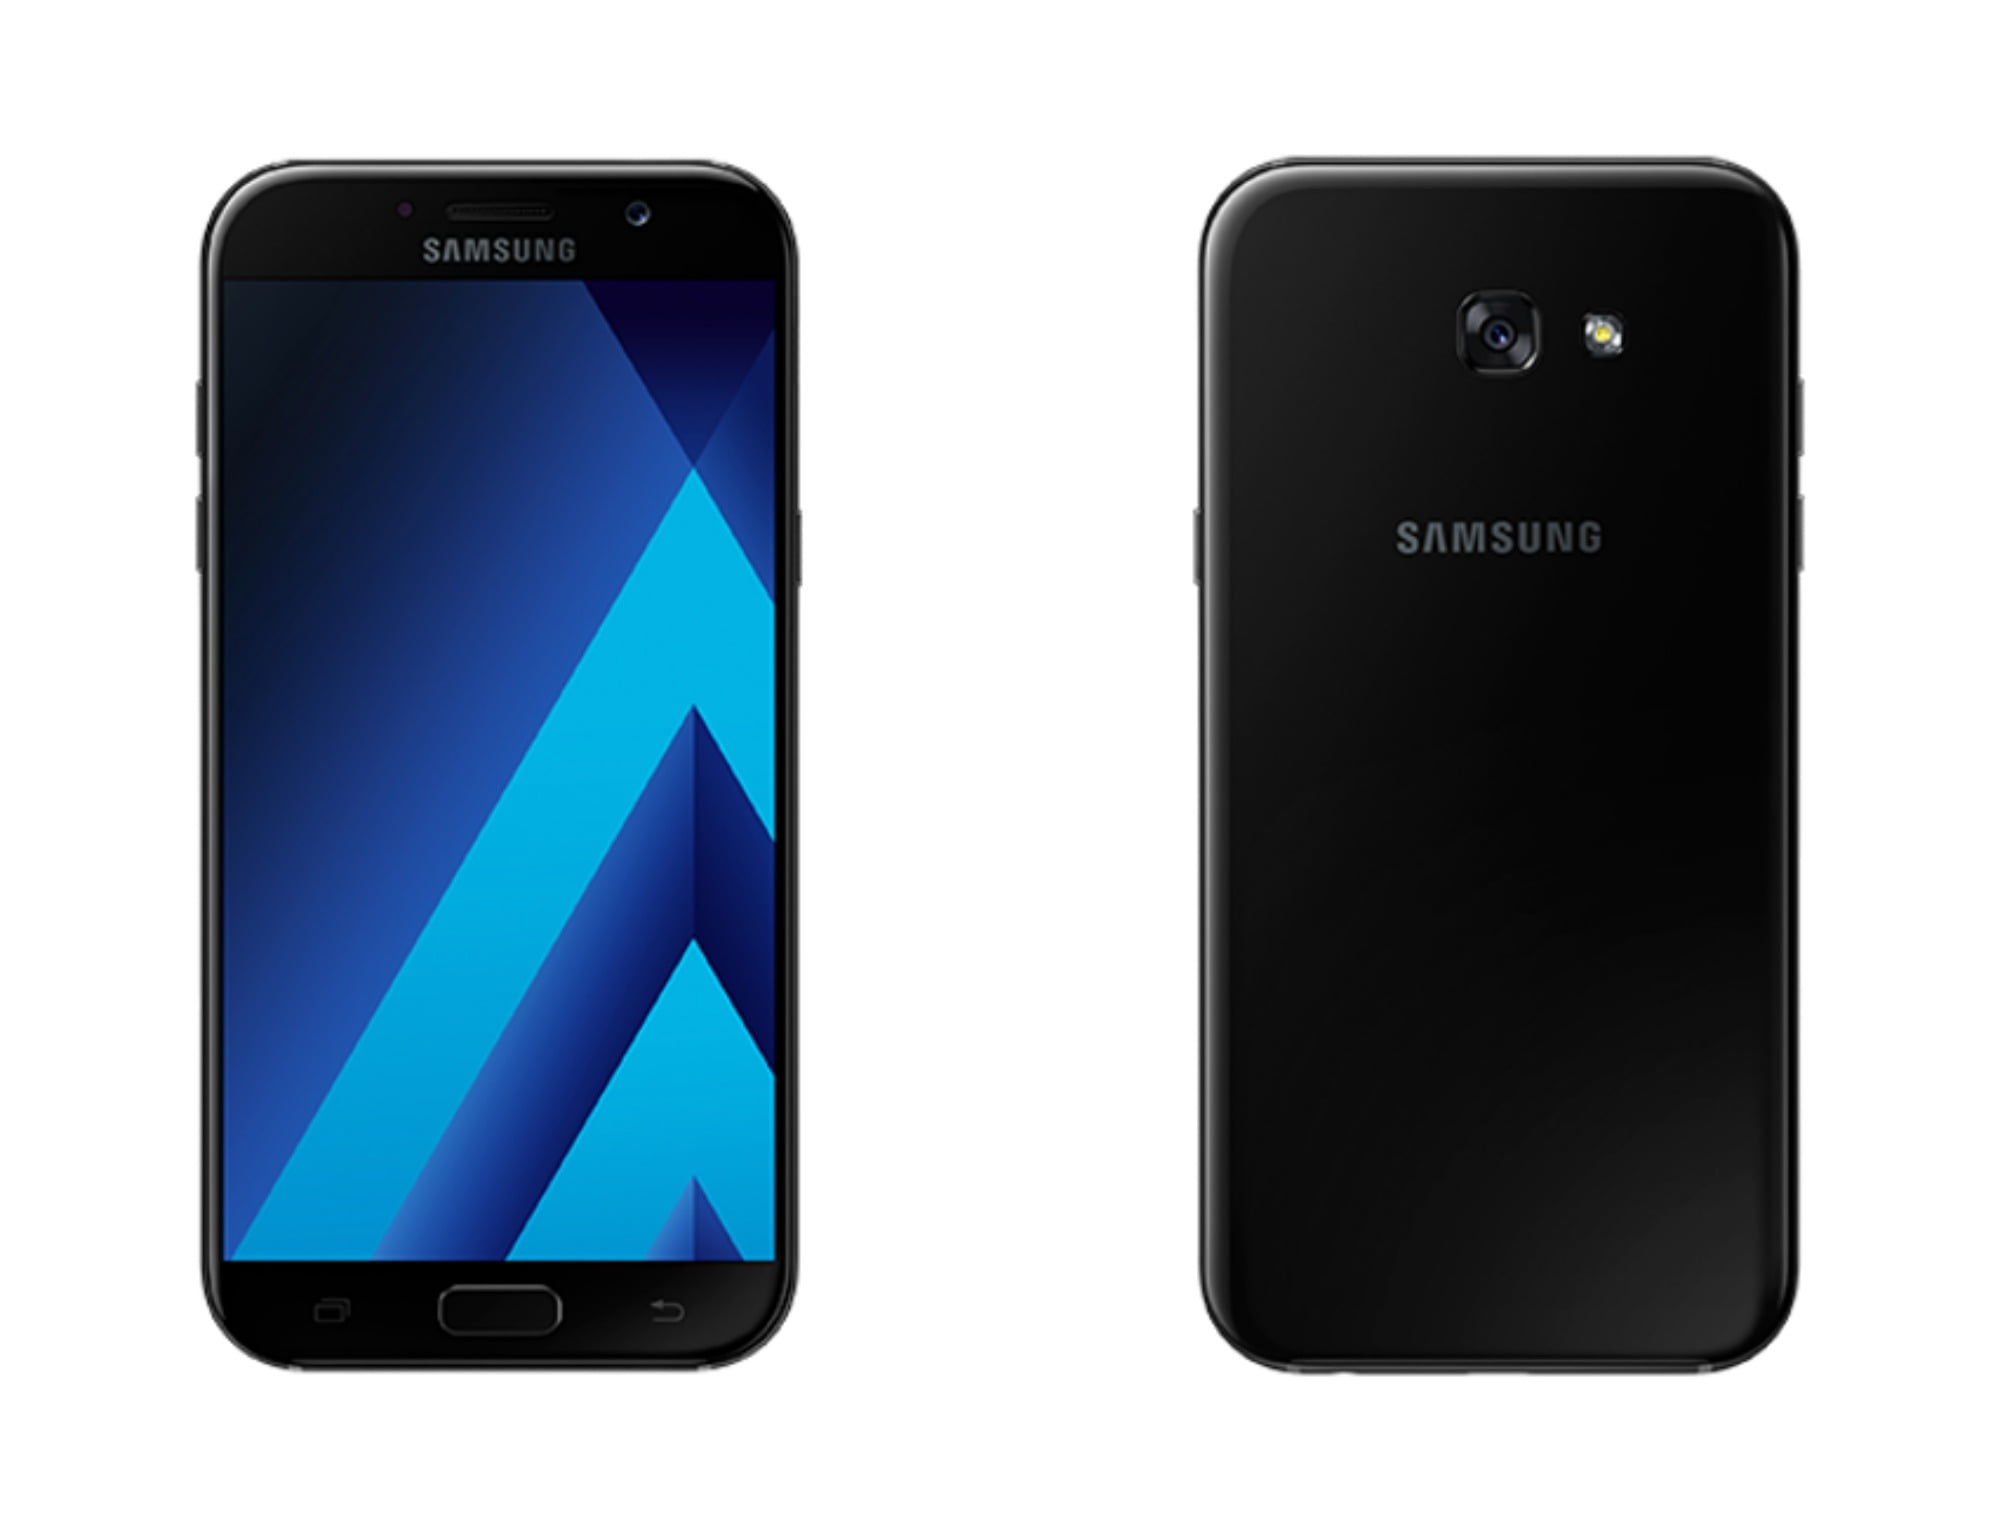 Samsung Galaxy A 7